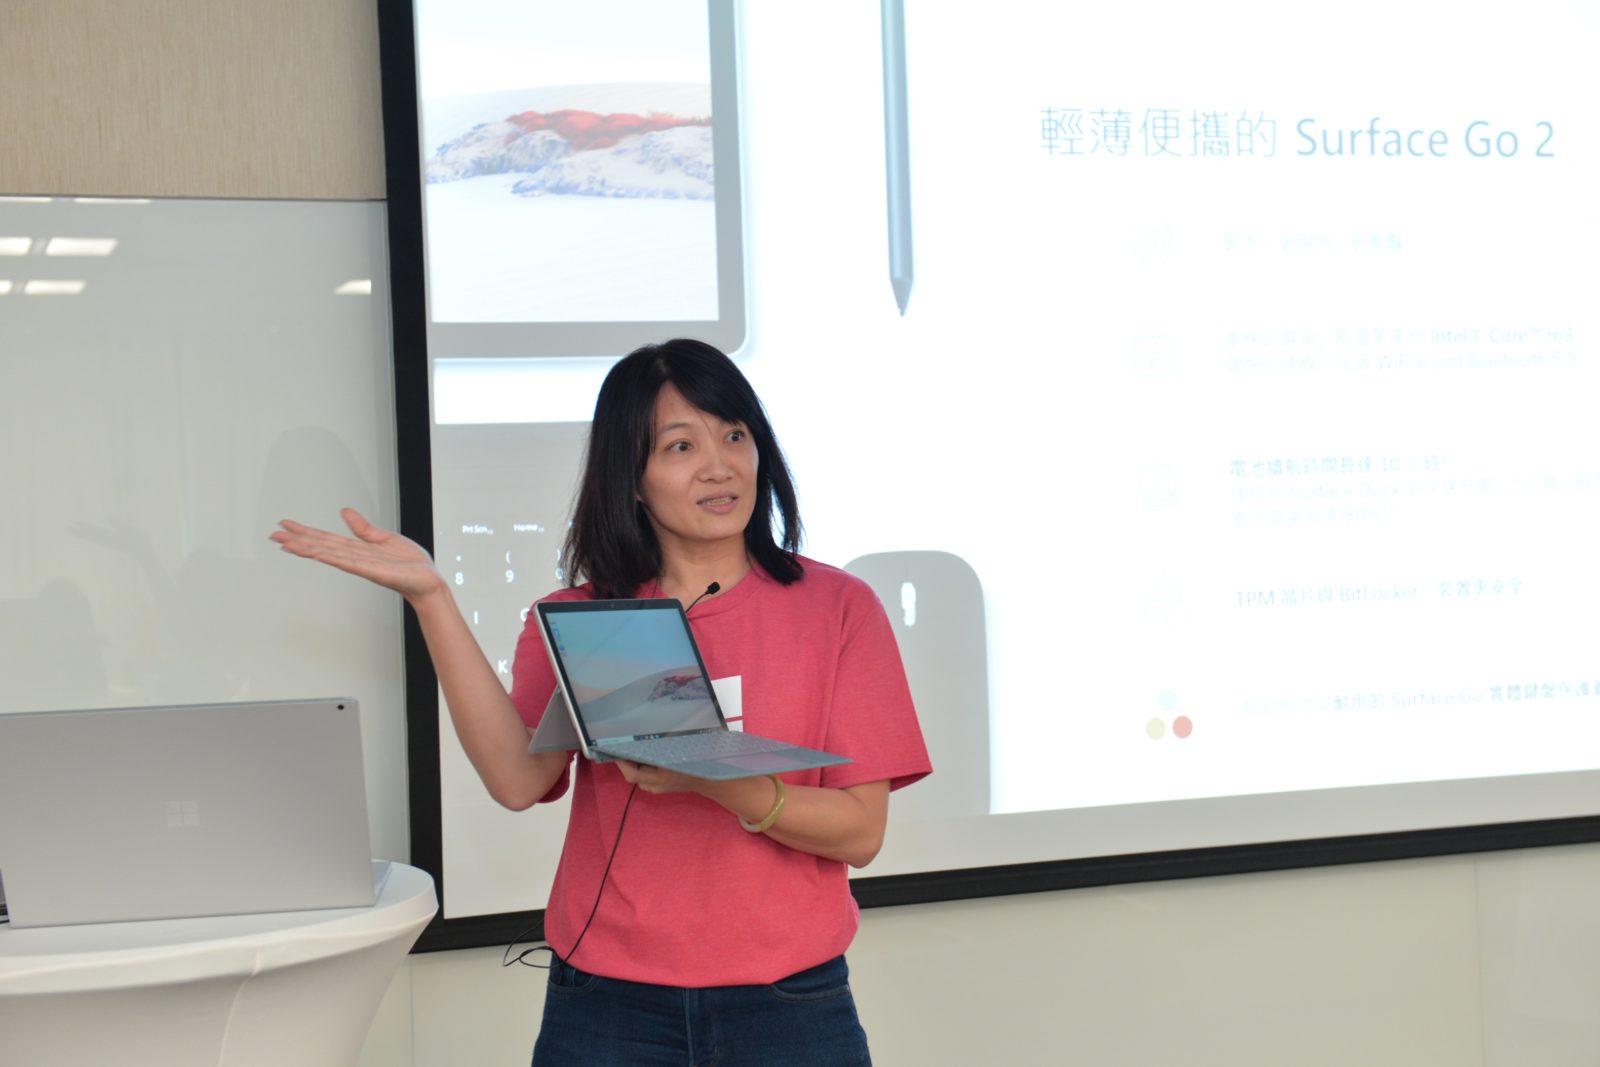 台灣微軟 Surface 事業部產品行銷經理陳思帆現場加映展示全新 Surface Go 2 和 Surface Pro X 二款新機，全方位滿足各式工作需求